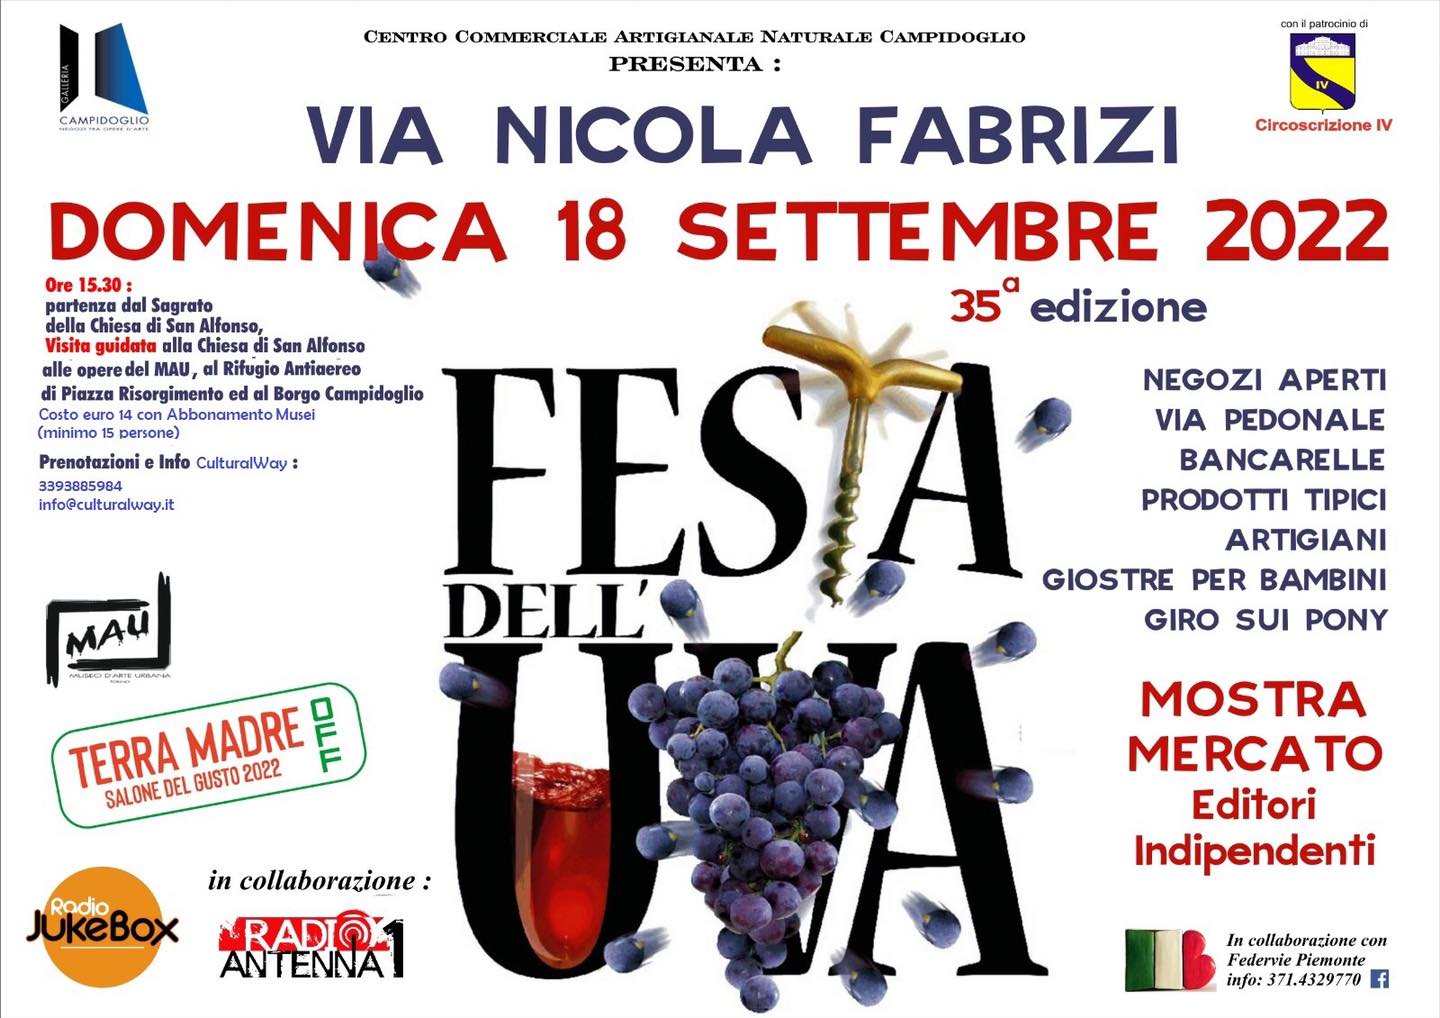 Domenica 18 settembre 2022 dalle 9 alle 20 si svolgerà la 35sima edizione della Festa dell'Uva in via Nicola Fabrizi - Torino 